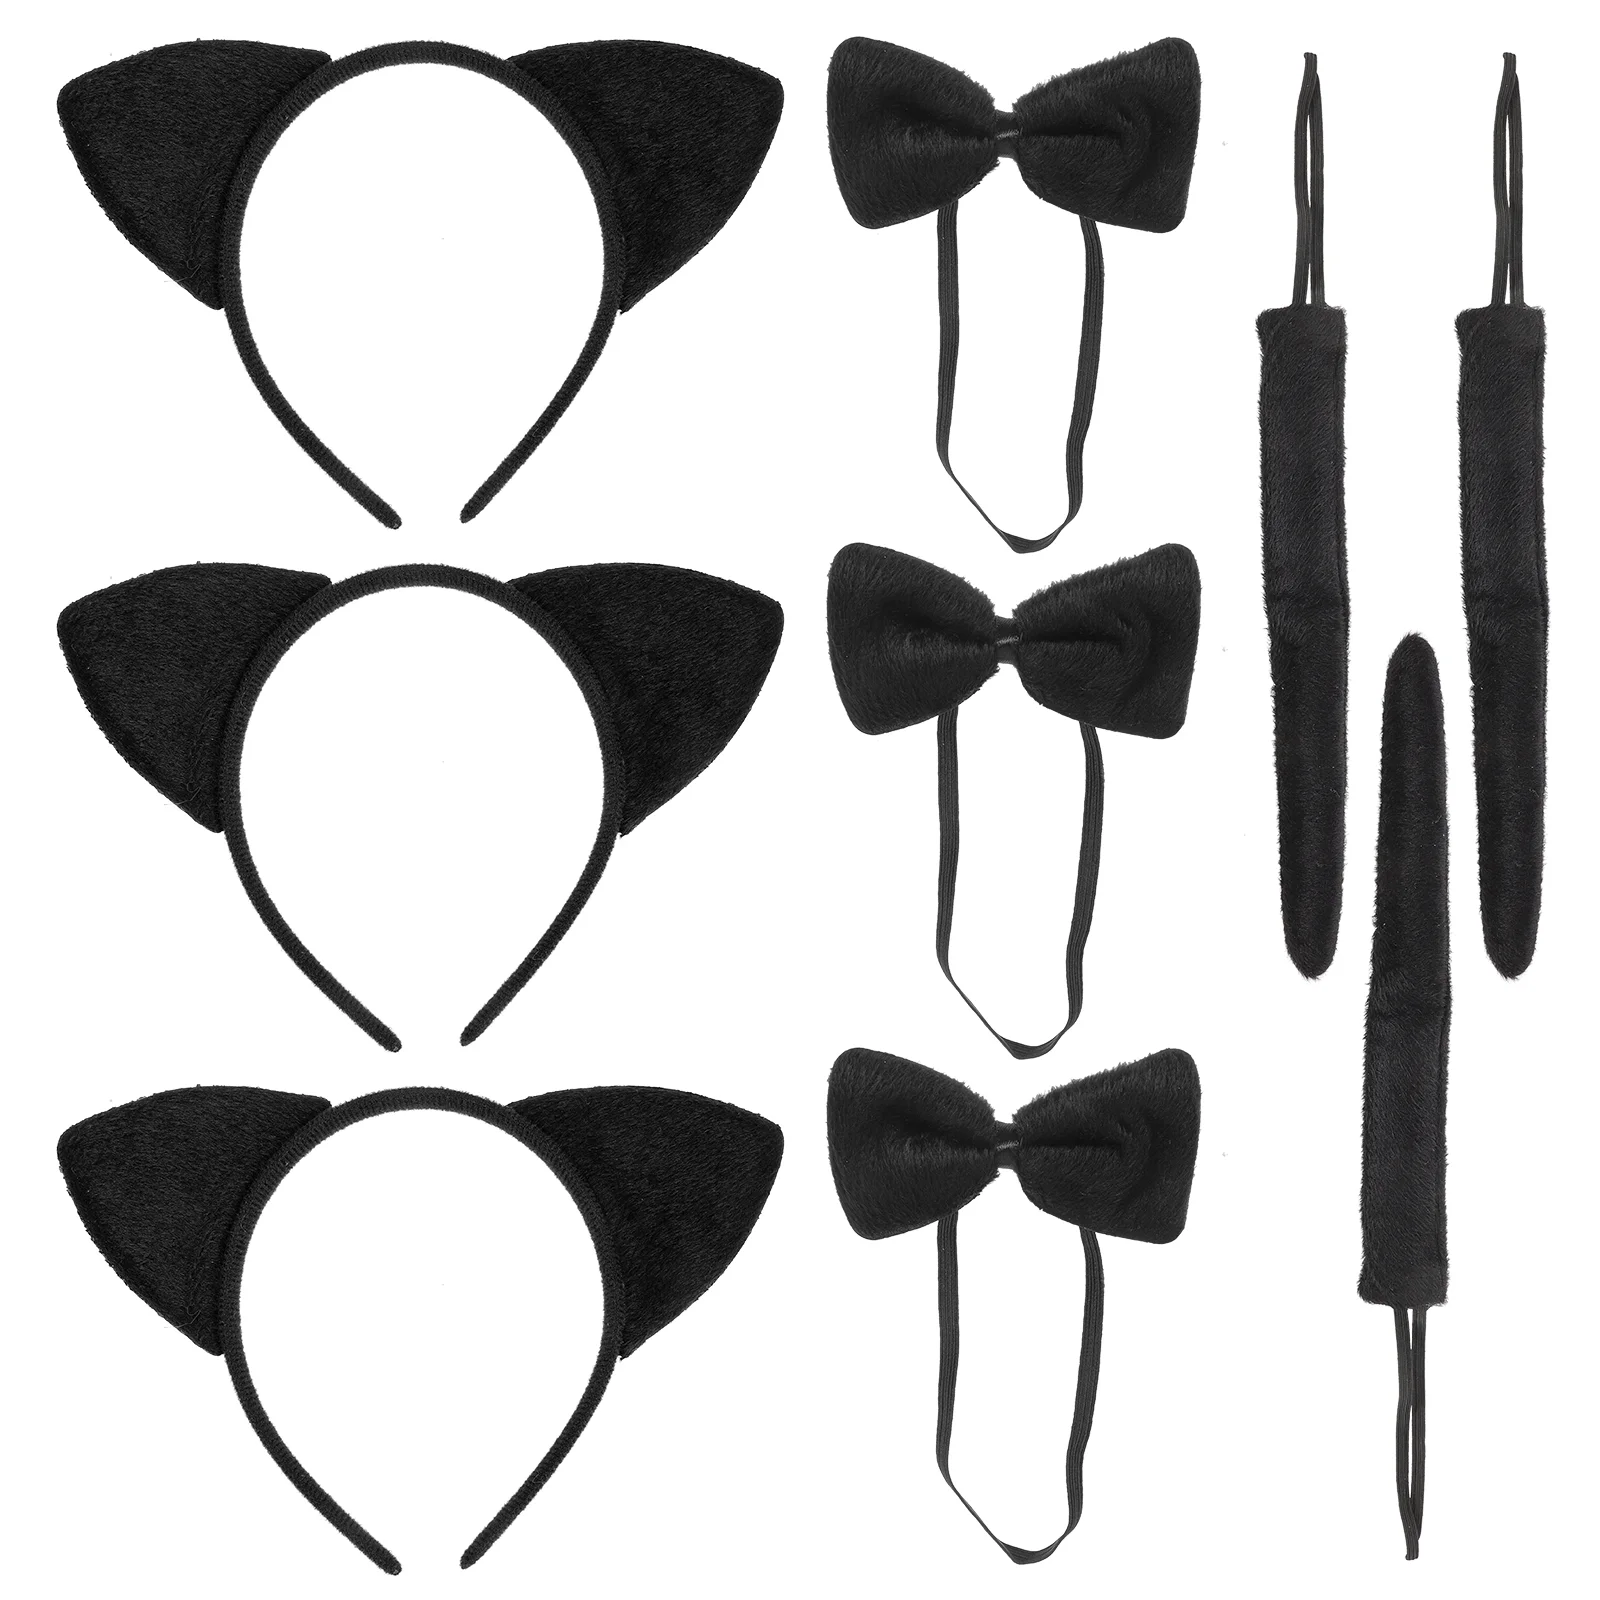 

3 комплекта повязка на голову с кошачьими ушками, галстук-бабочка, Детский комплект для косплея, реквизит для представлений с животными